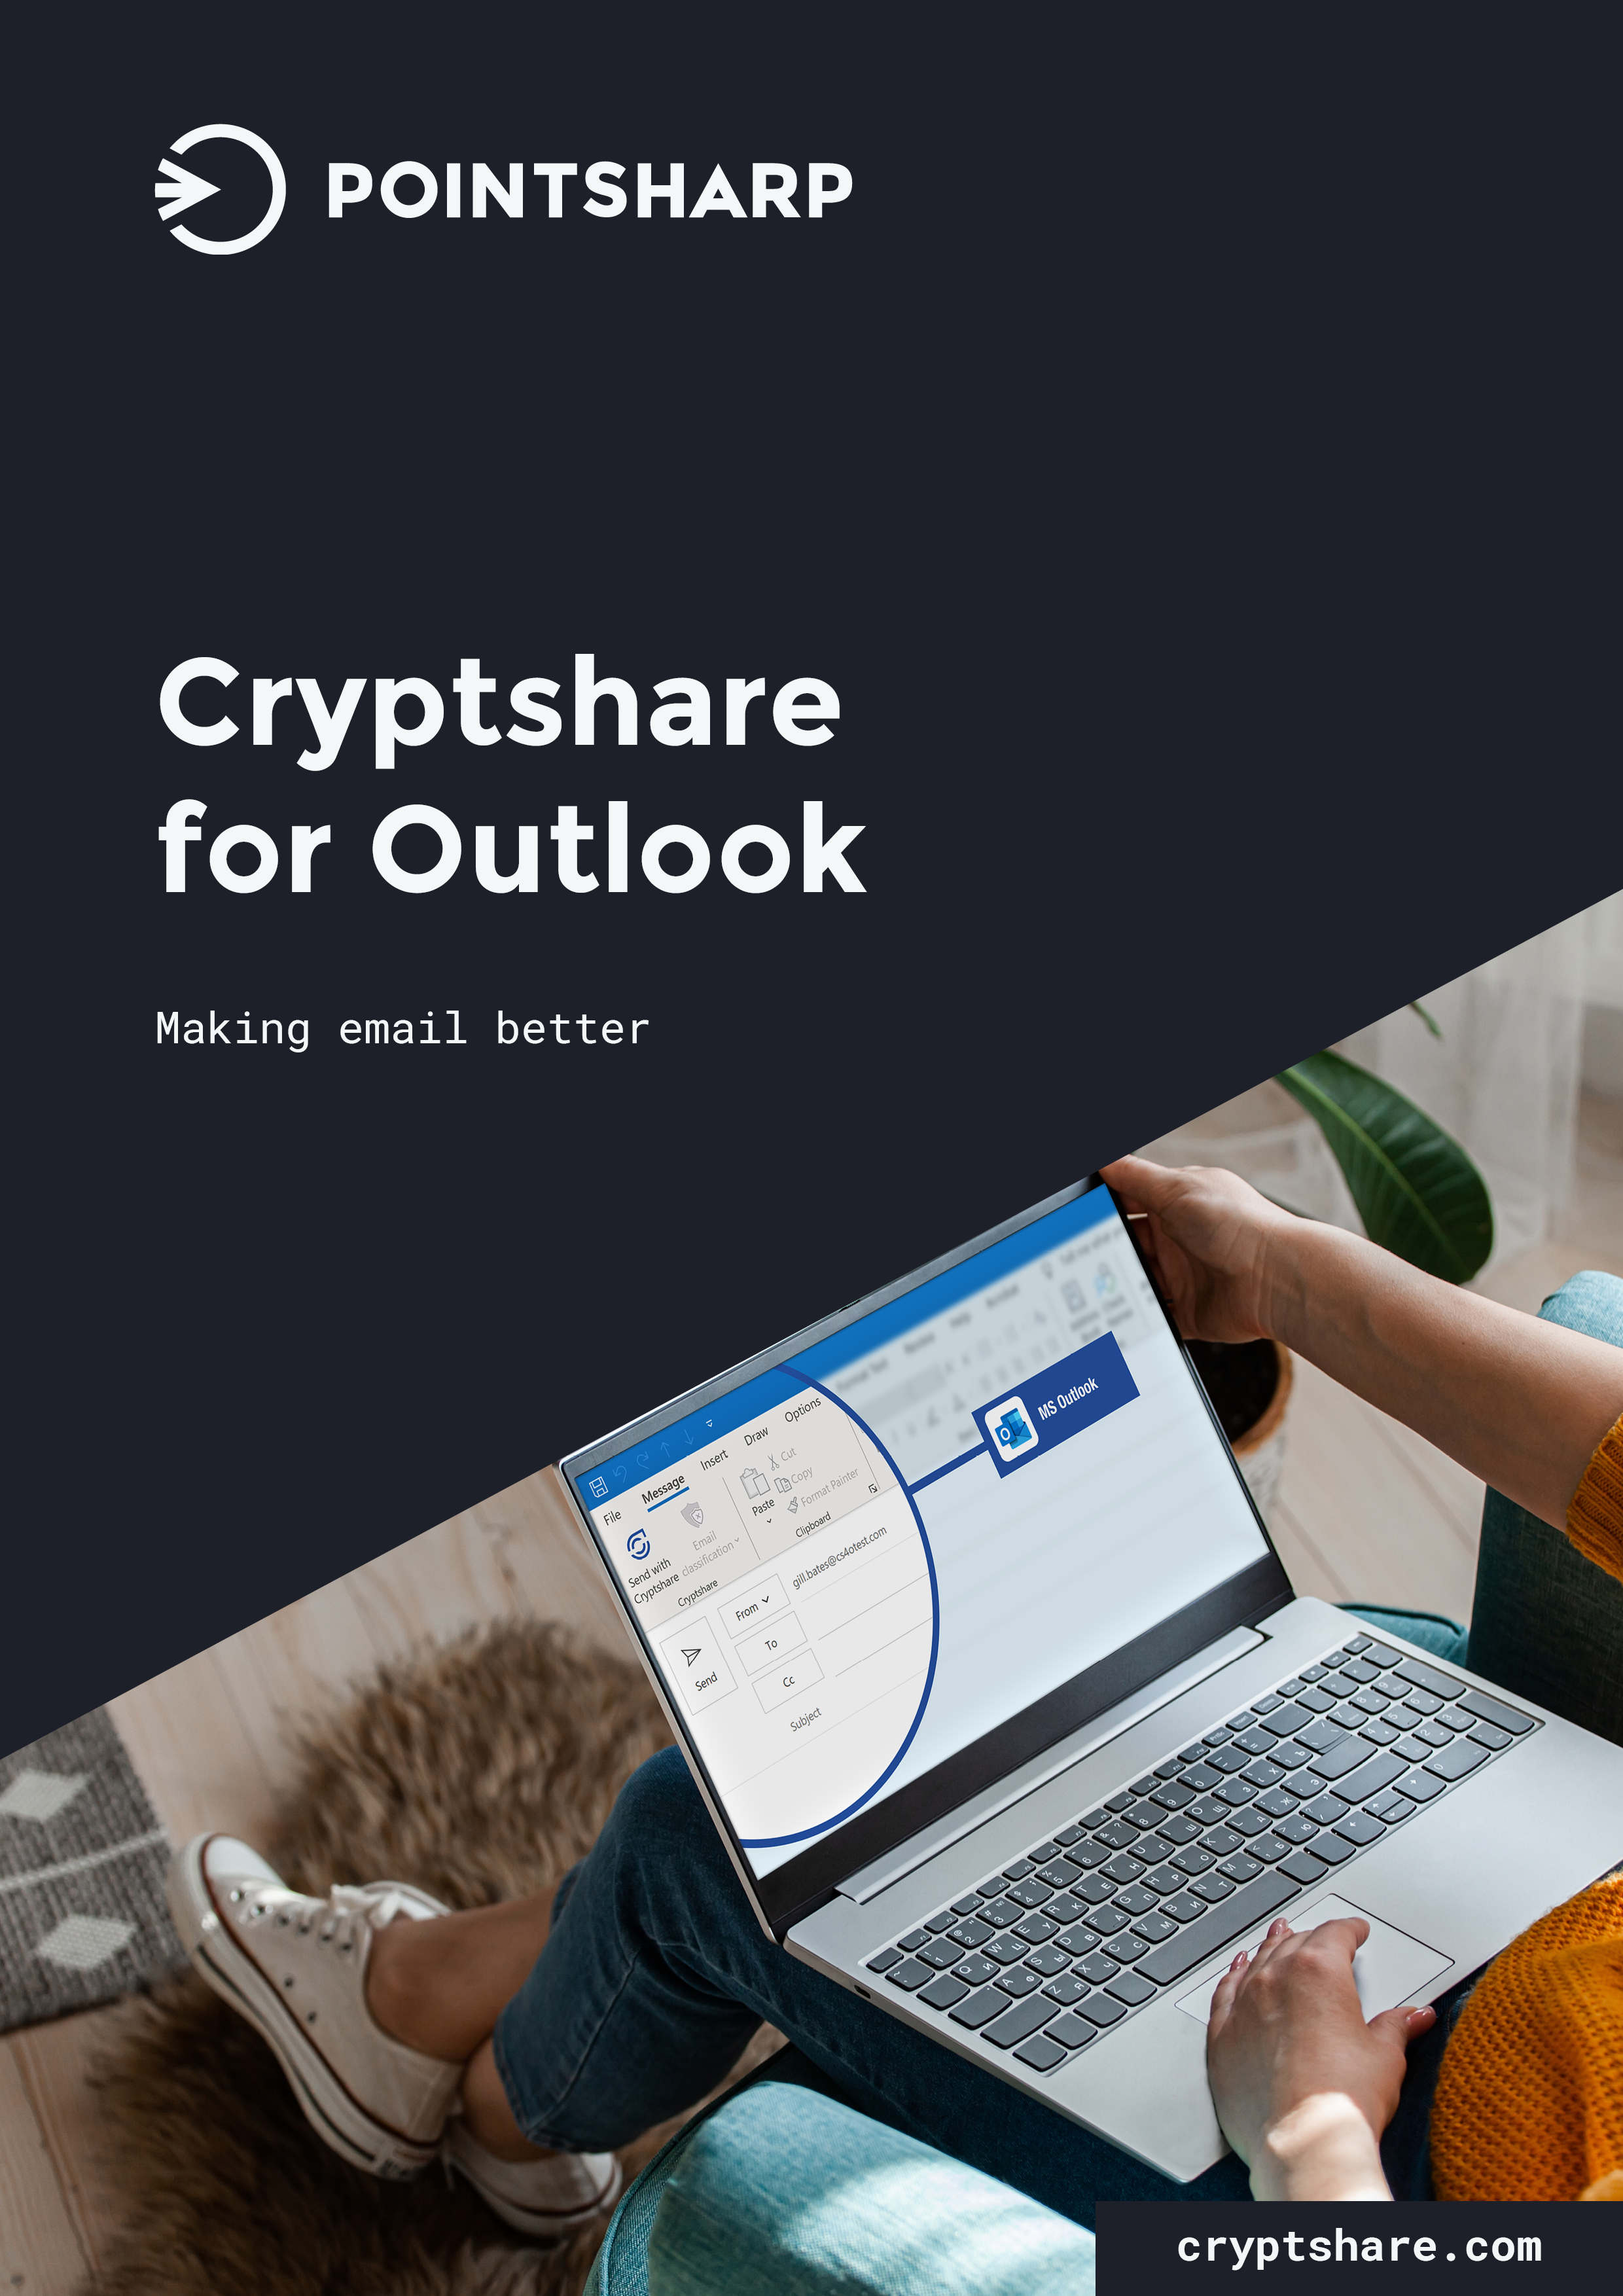 Pointsharp-Cryptshare for Outlook_EN